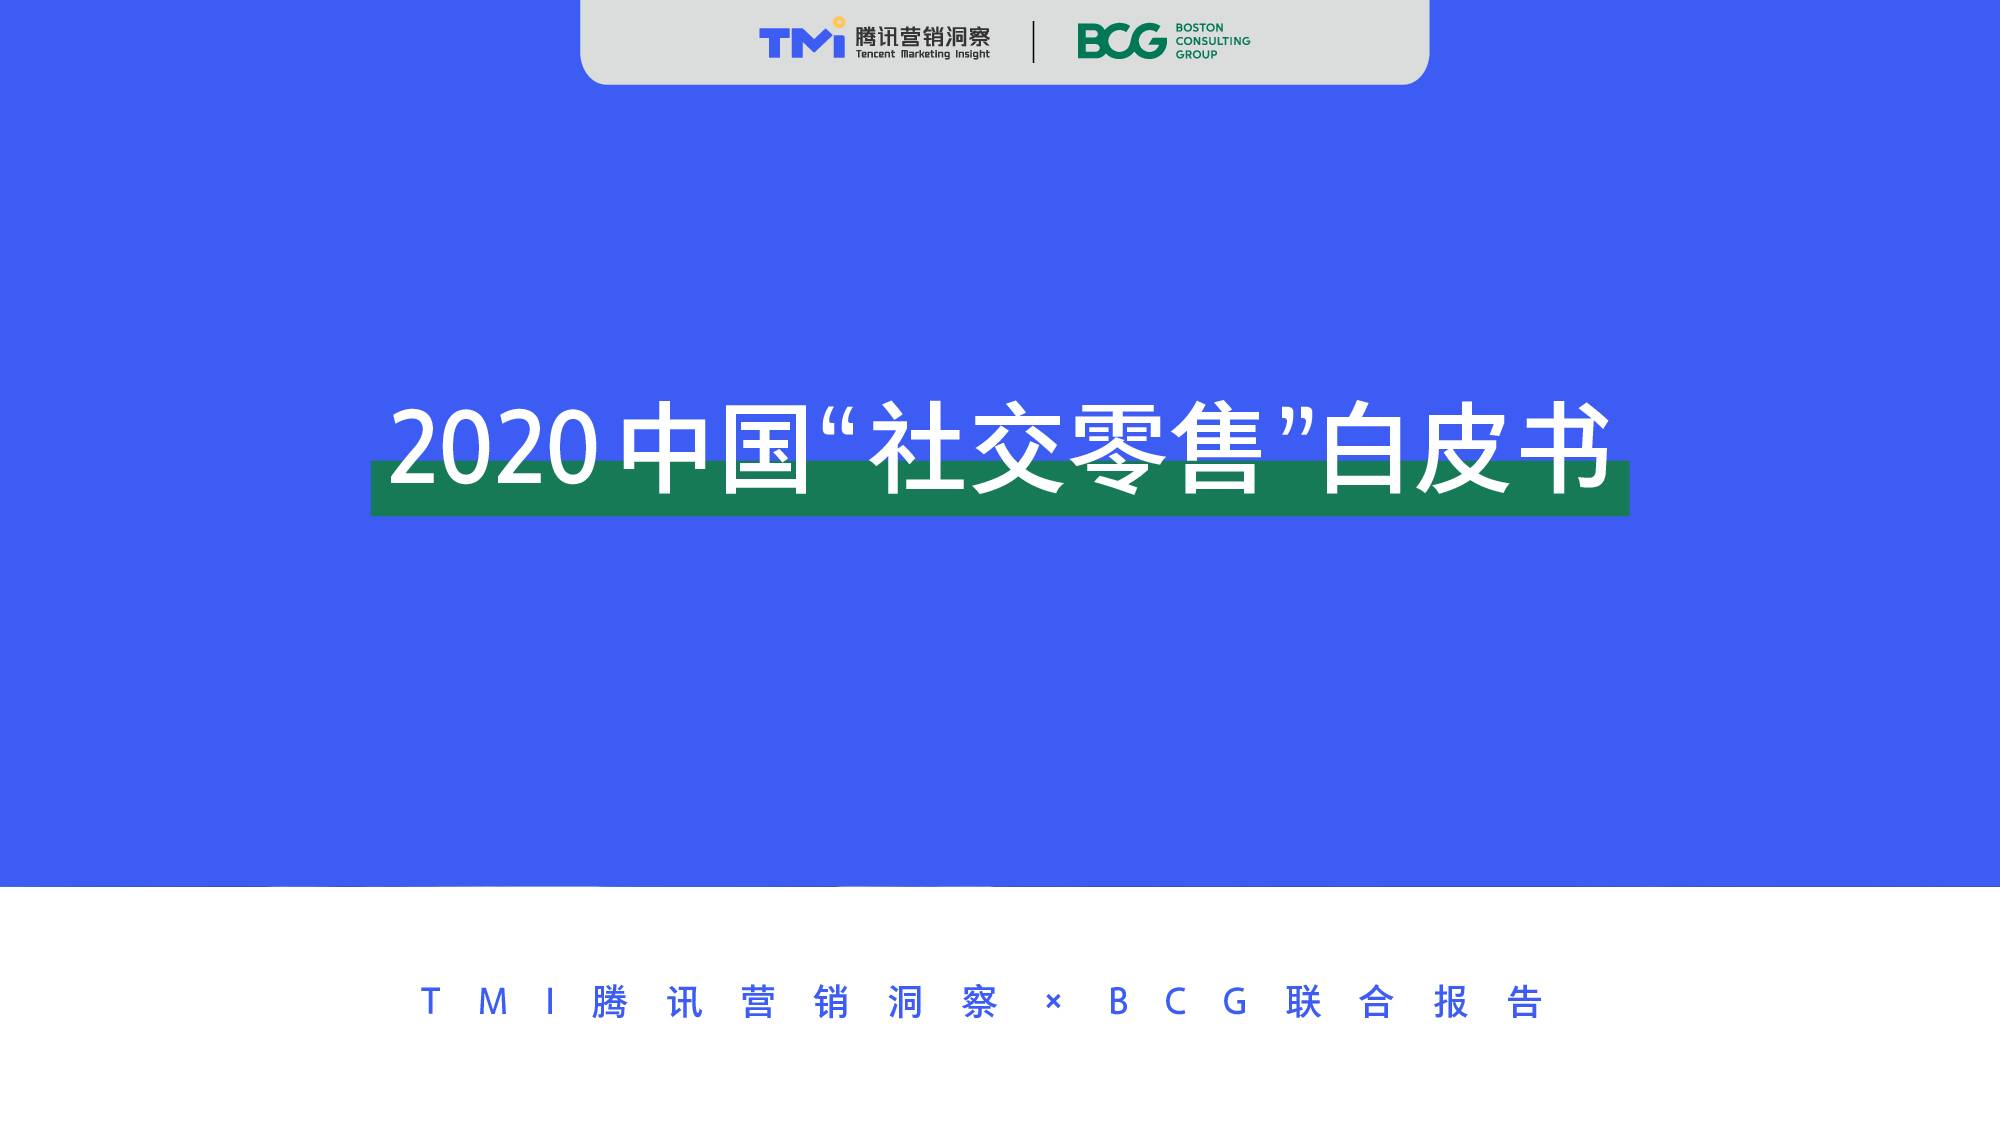 2020中国“社交零售”白皮书 波士顿咨询 2020-01-23